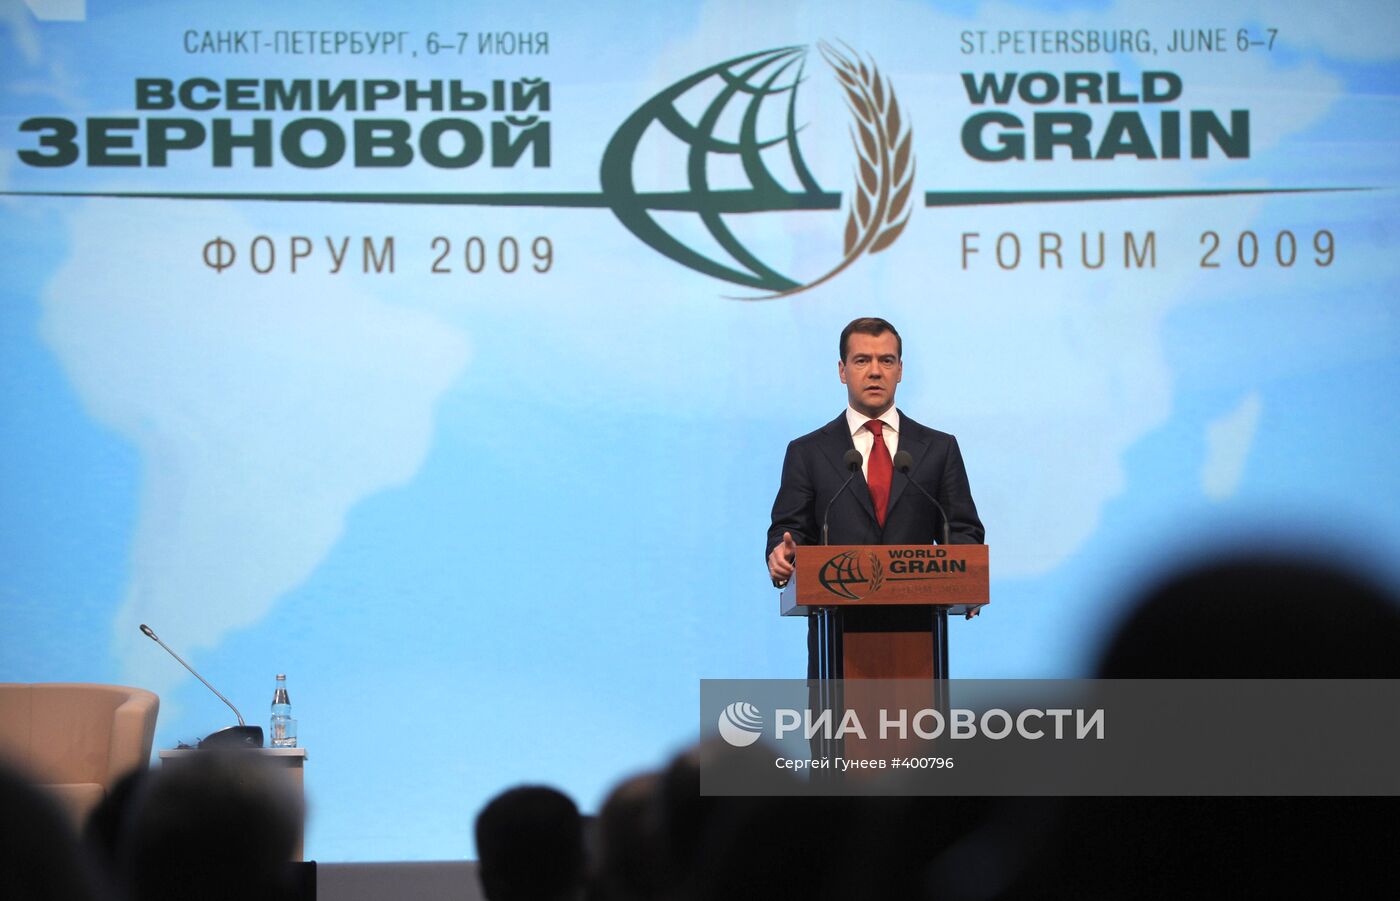 Д.Медведев на открытии Всемирного зернового форума